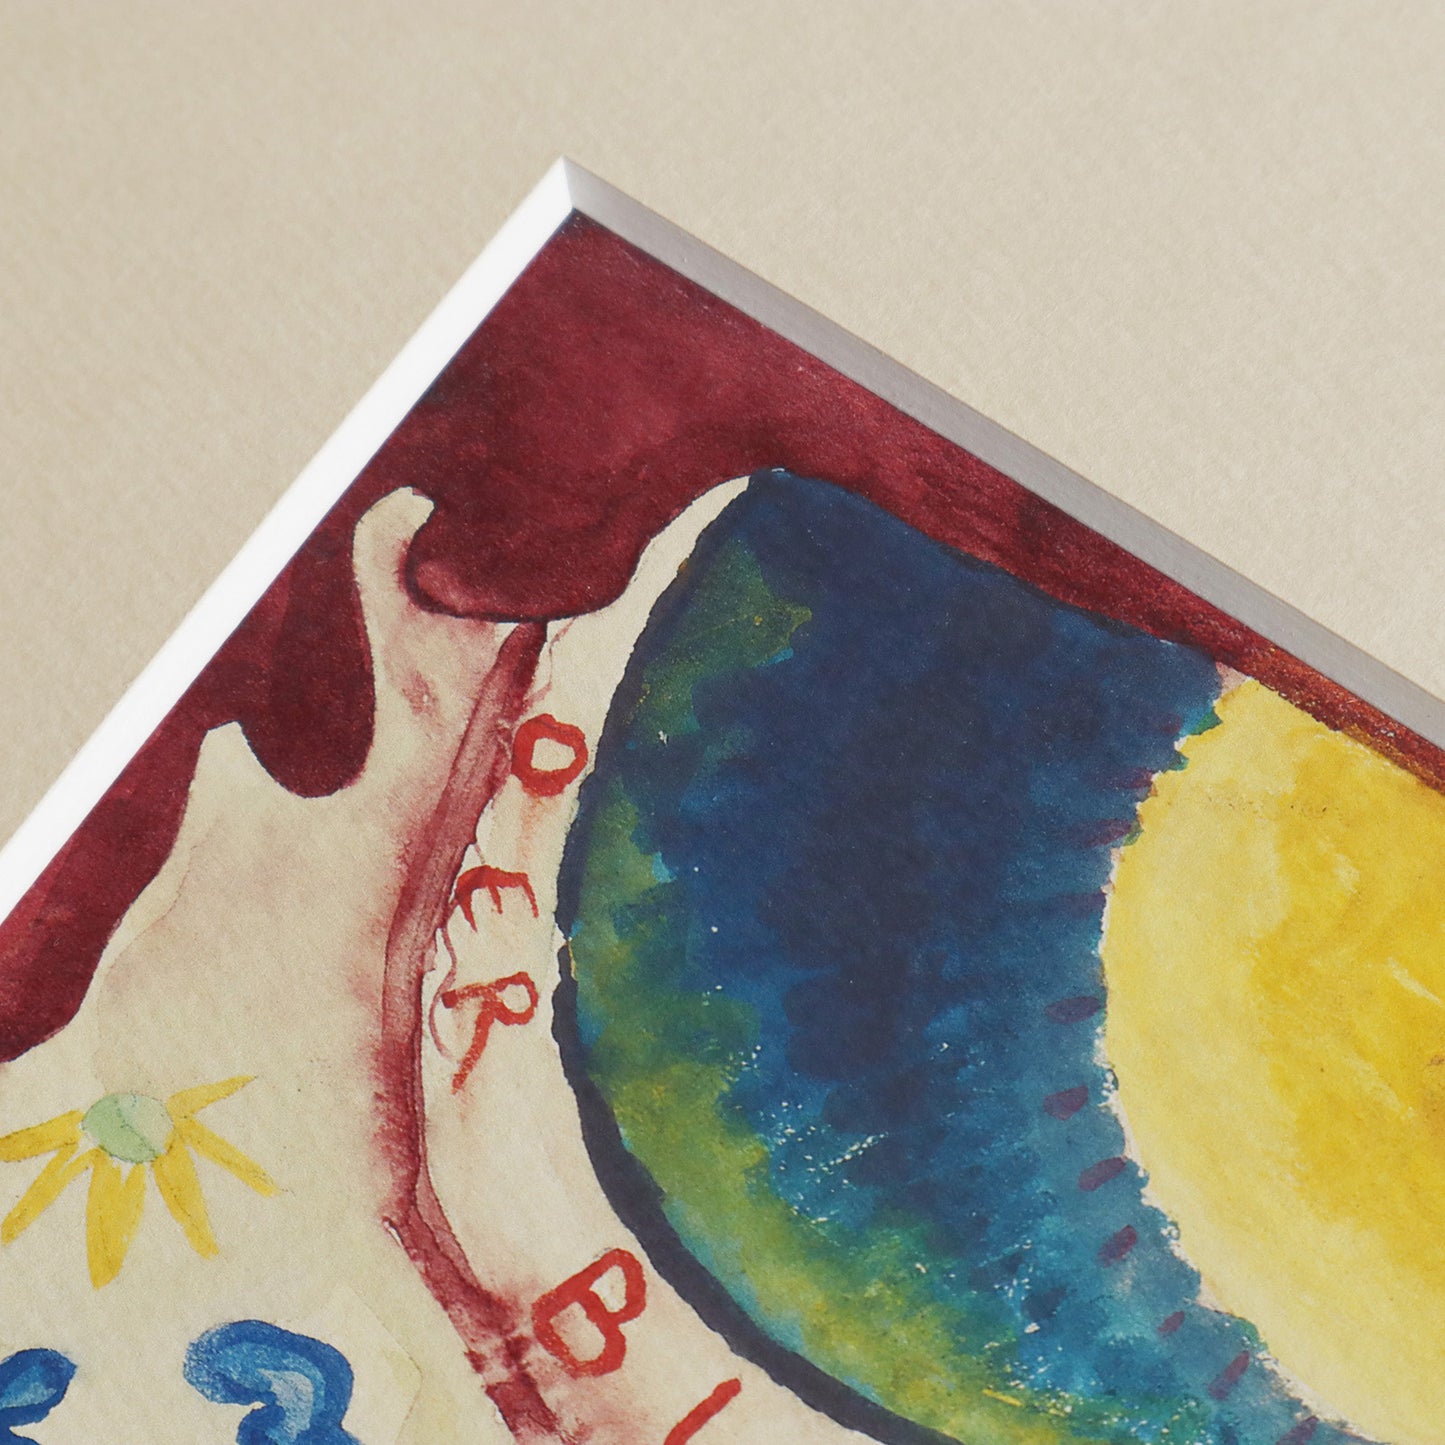 ワシリー・カンディンスキー「「青騎士」年鑑表紙のためのデザイン」アートポスター（フレーム付き） /Wassily Kandinsky “Design for the cover of the almanac The Blue Rider” Art Frame